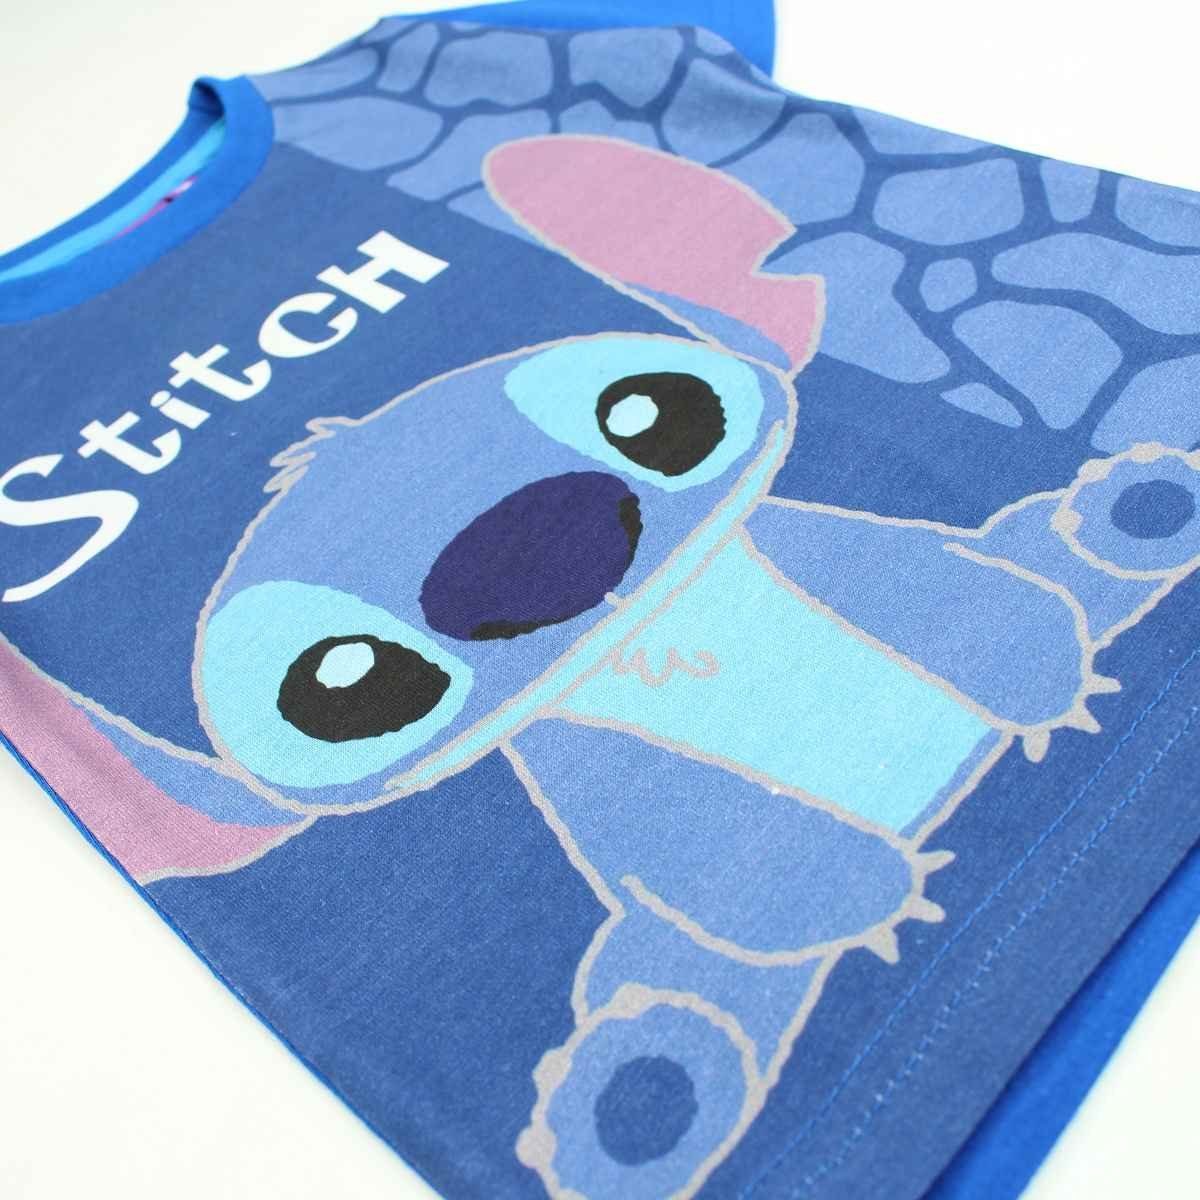 Gr. 128 98 Kurzarmshirt aus Baumwolle Stitch Blau T-Shirt Lilo Stitch - & cm Jungen